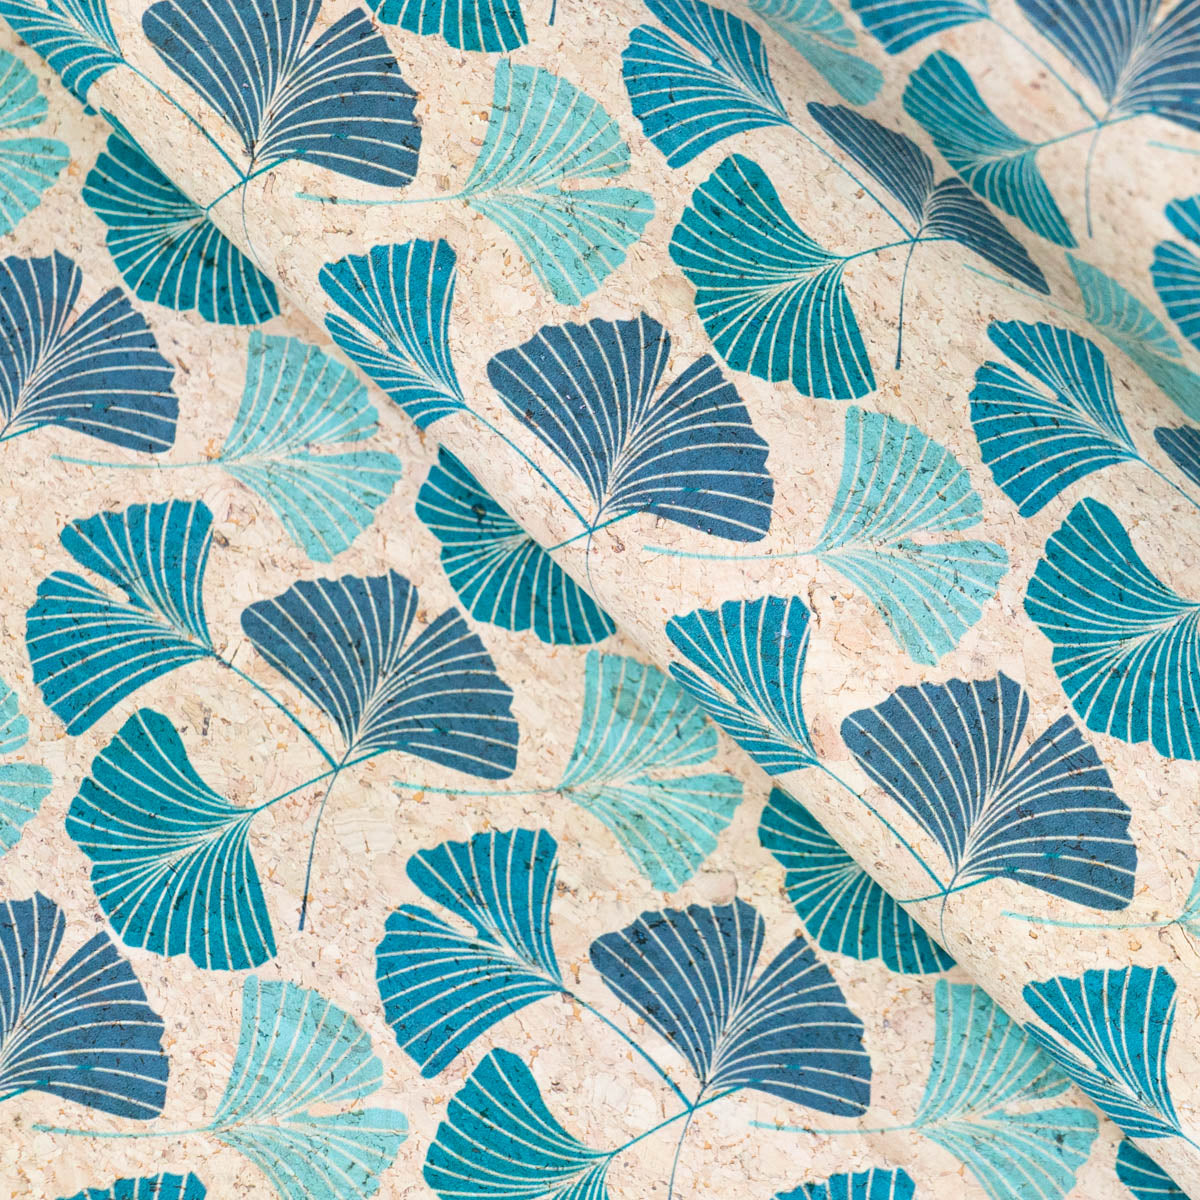 Gingko Biloba Leaf Pattern in Teal & Green on Cork Fabric COF-505